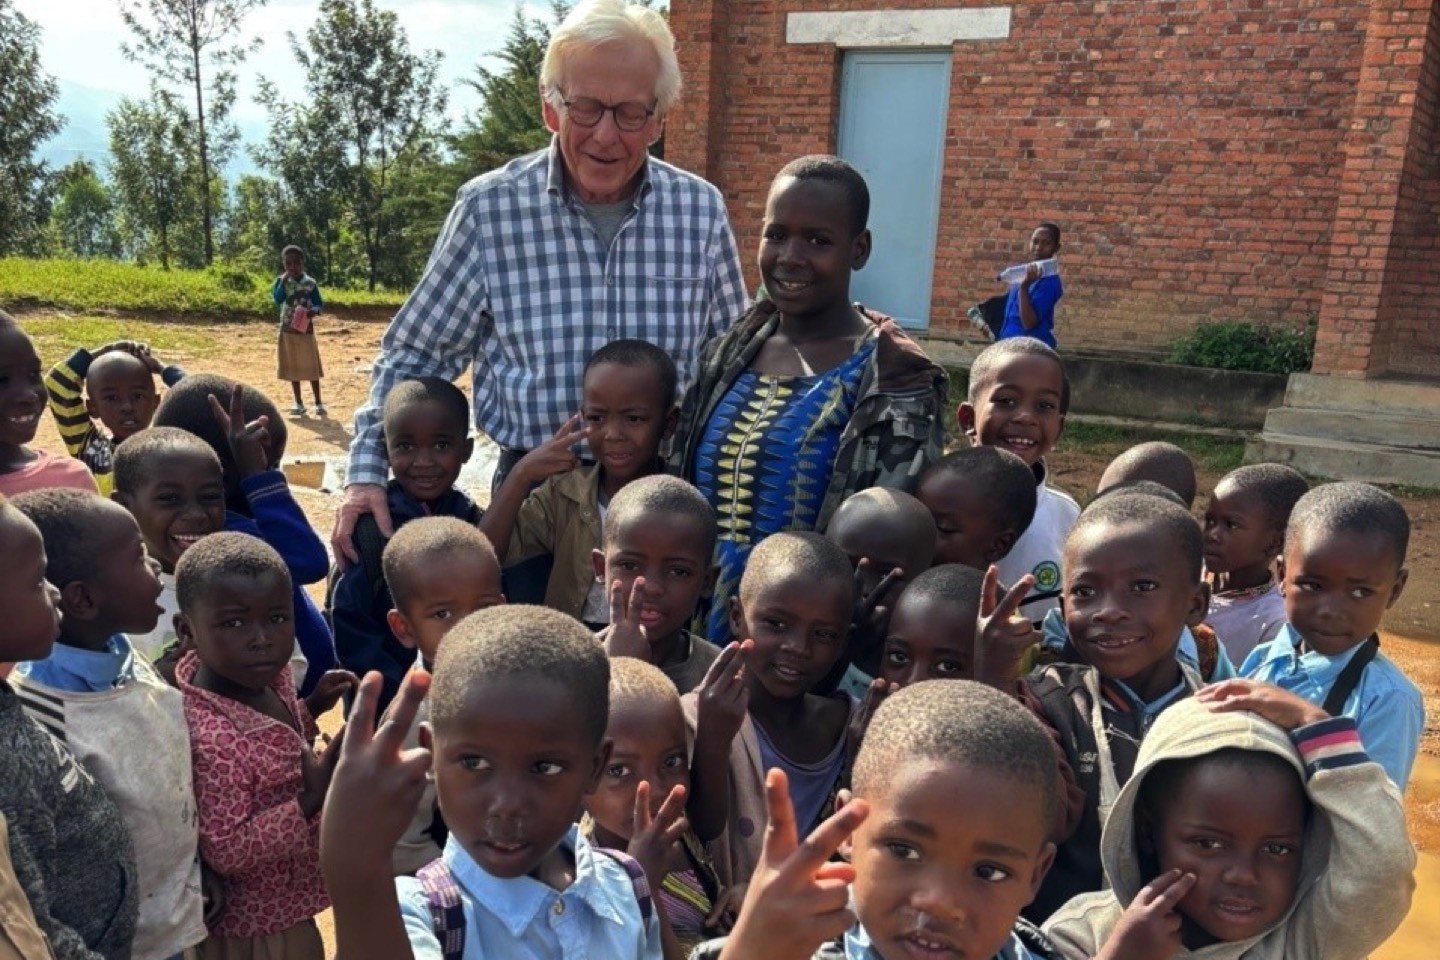 Mein Leben,Entwicklungshilfe,Vortrag,Ruanda,Prof. Bernhard Tenckhoff,